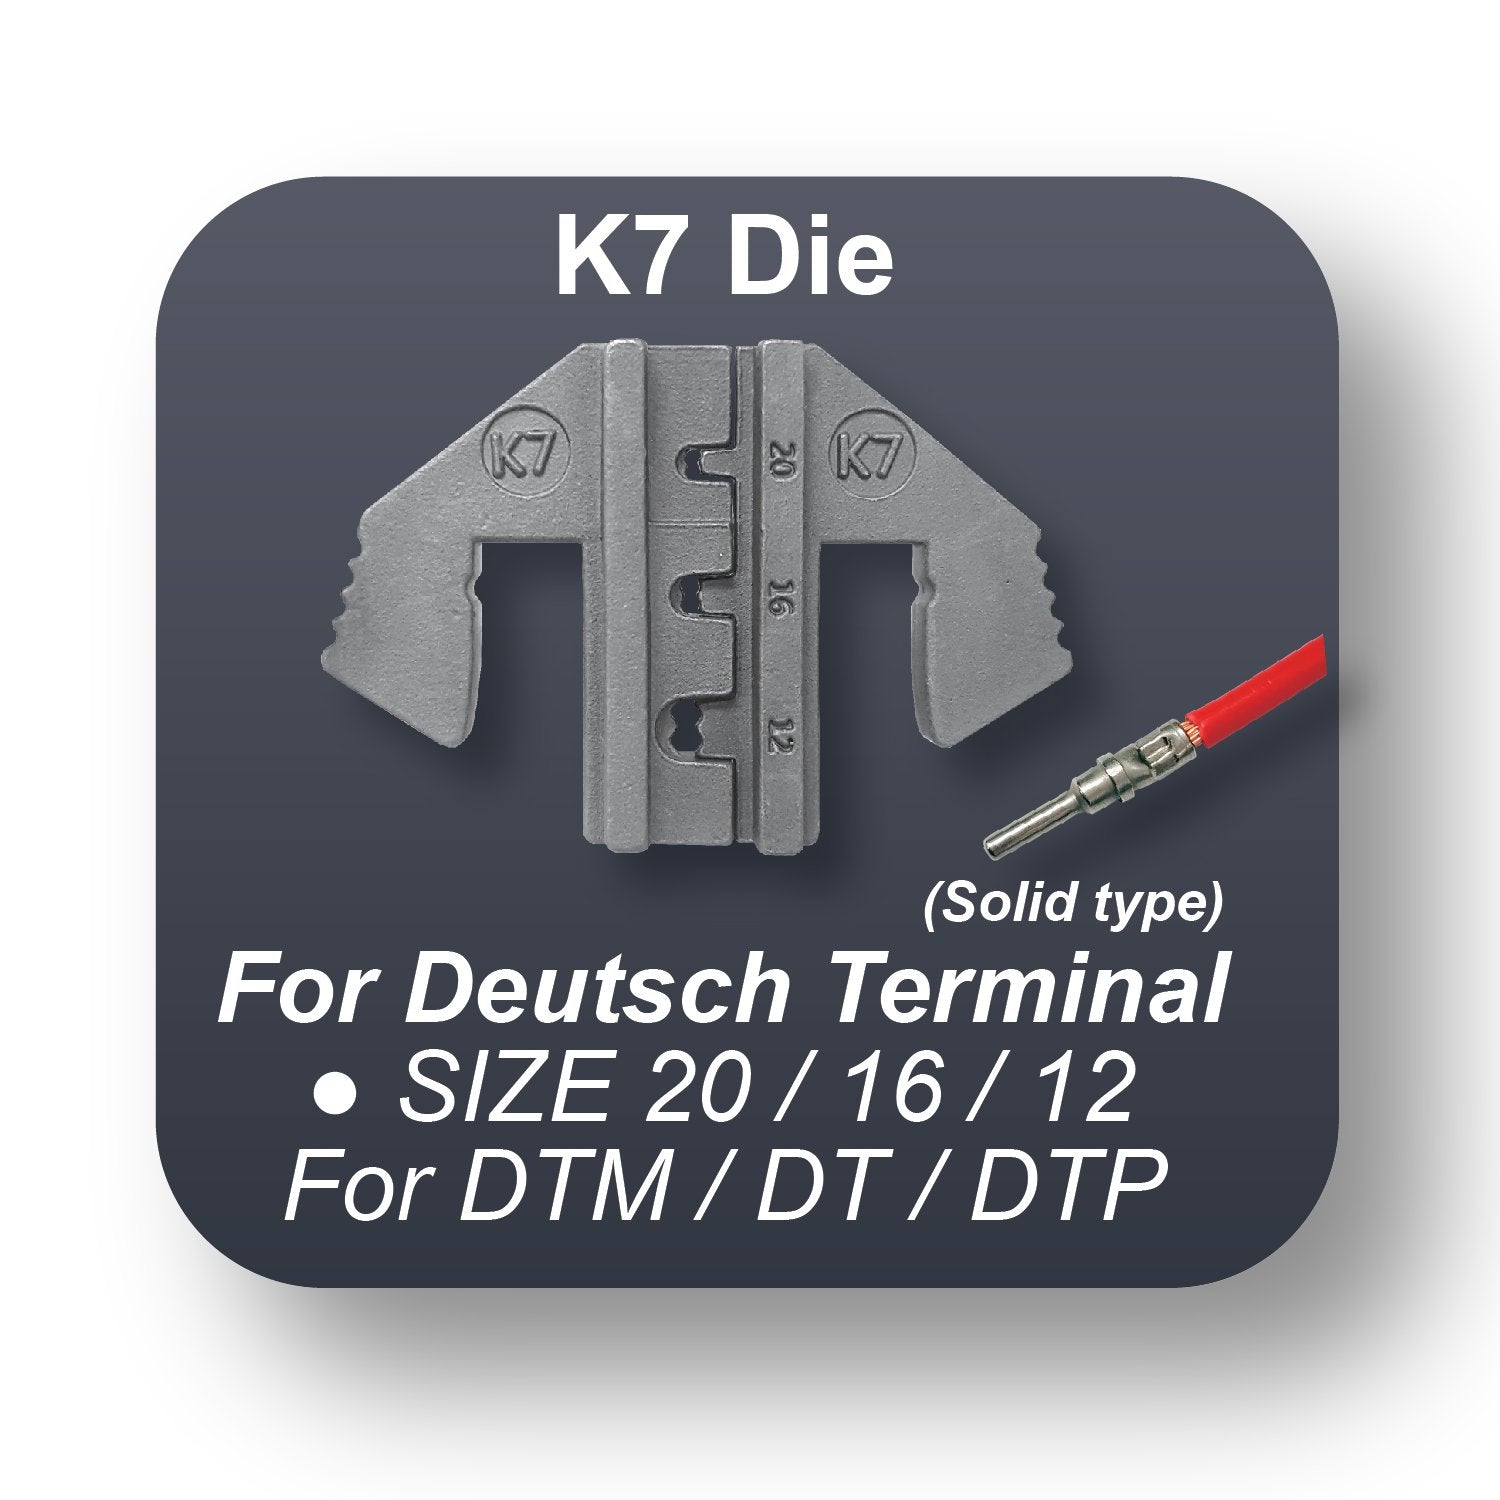 Crimping Tool Die - K7 Die for Deutsch Terminal 20 / 16 / 12 DTM, DT, DTP